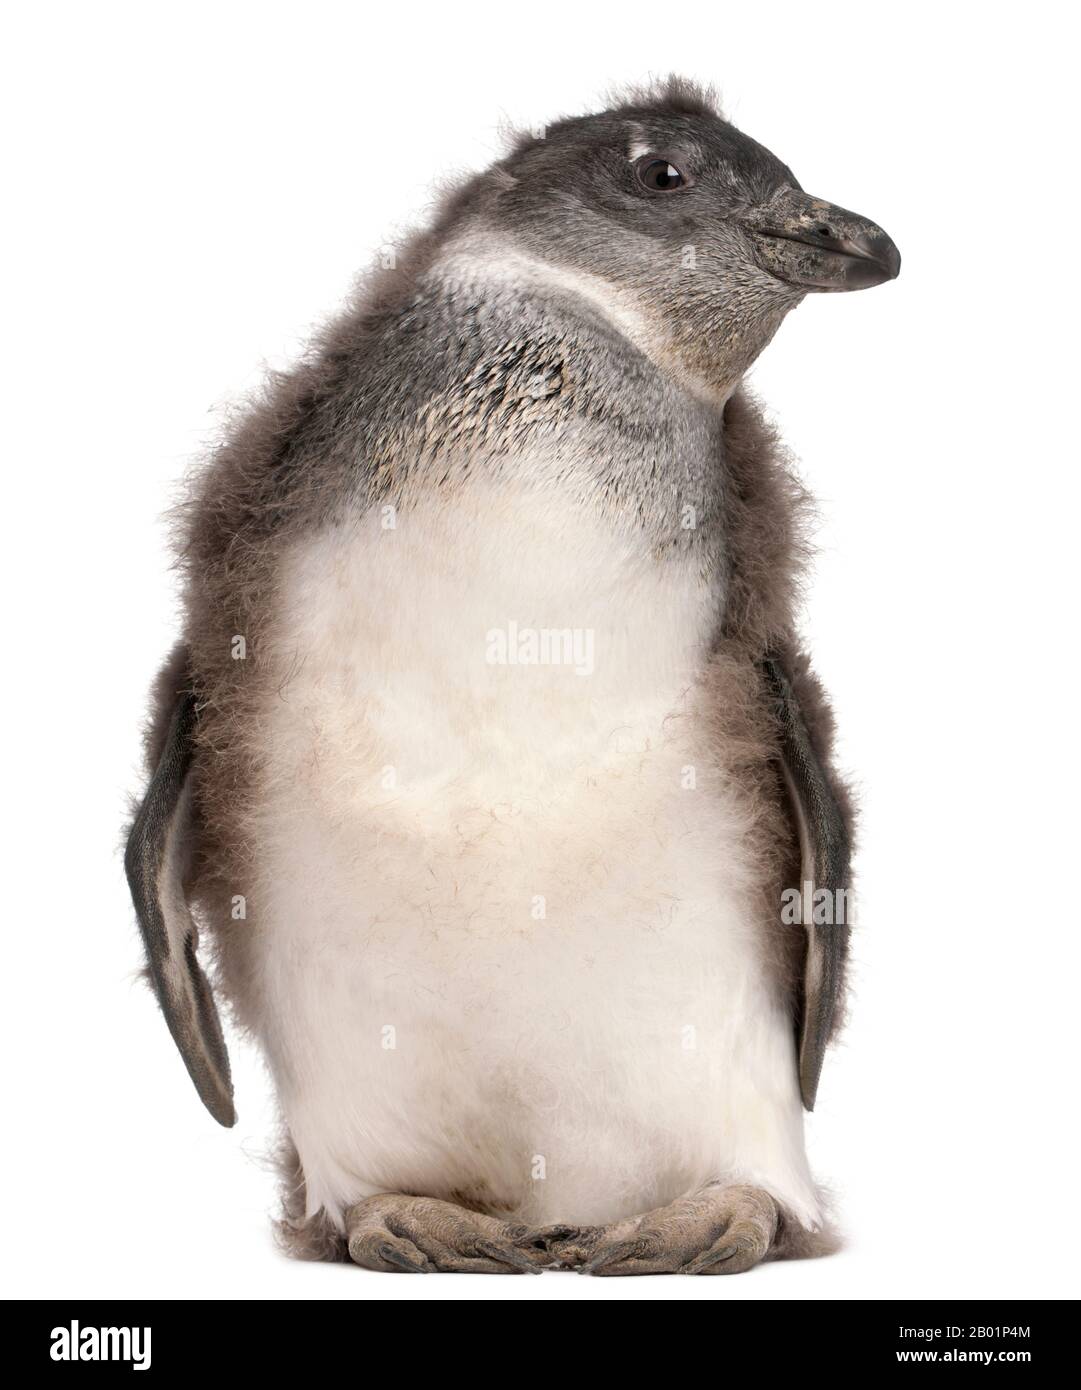 Junger afrikanischer Penguin, Spheniscus demersus, 2 Monate alt, vor weißem Hintergrund Stockfoto